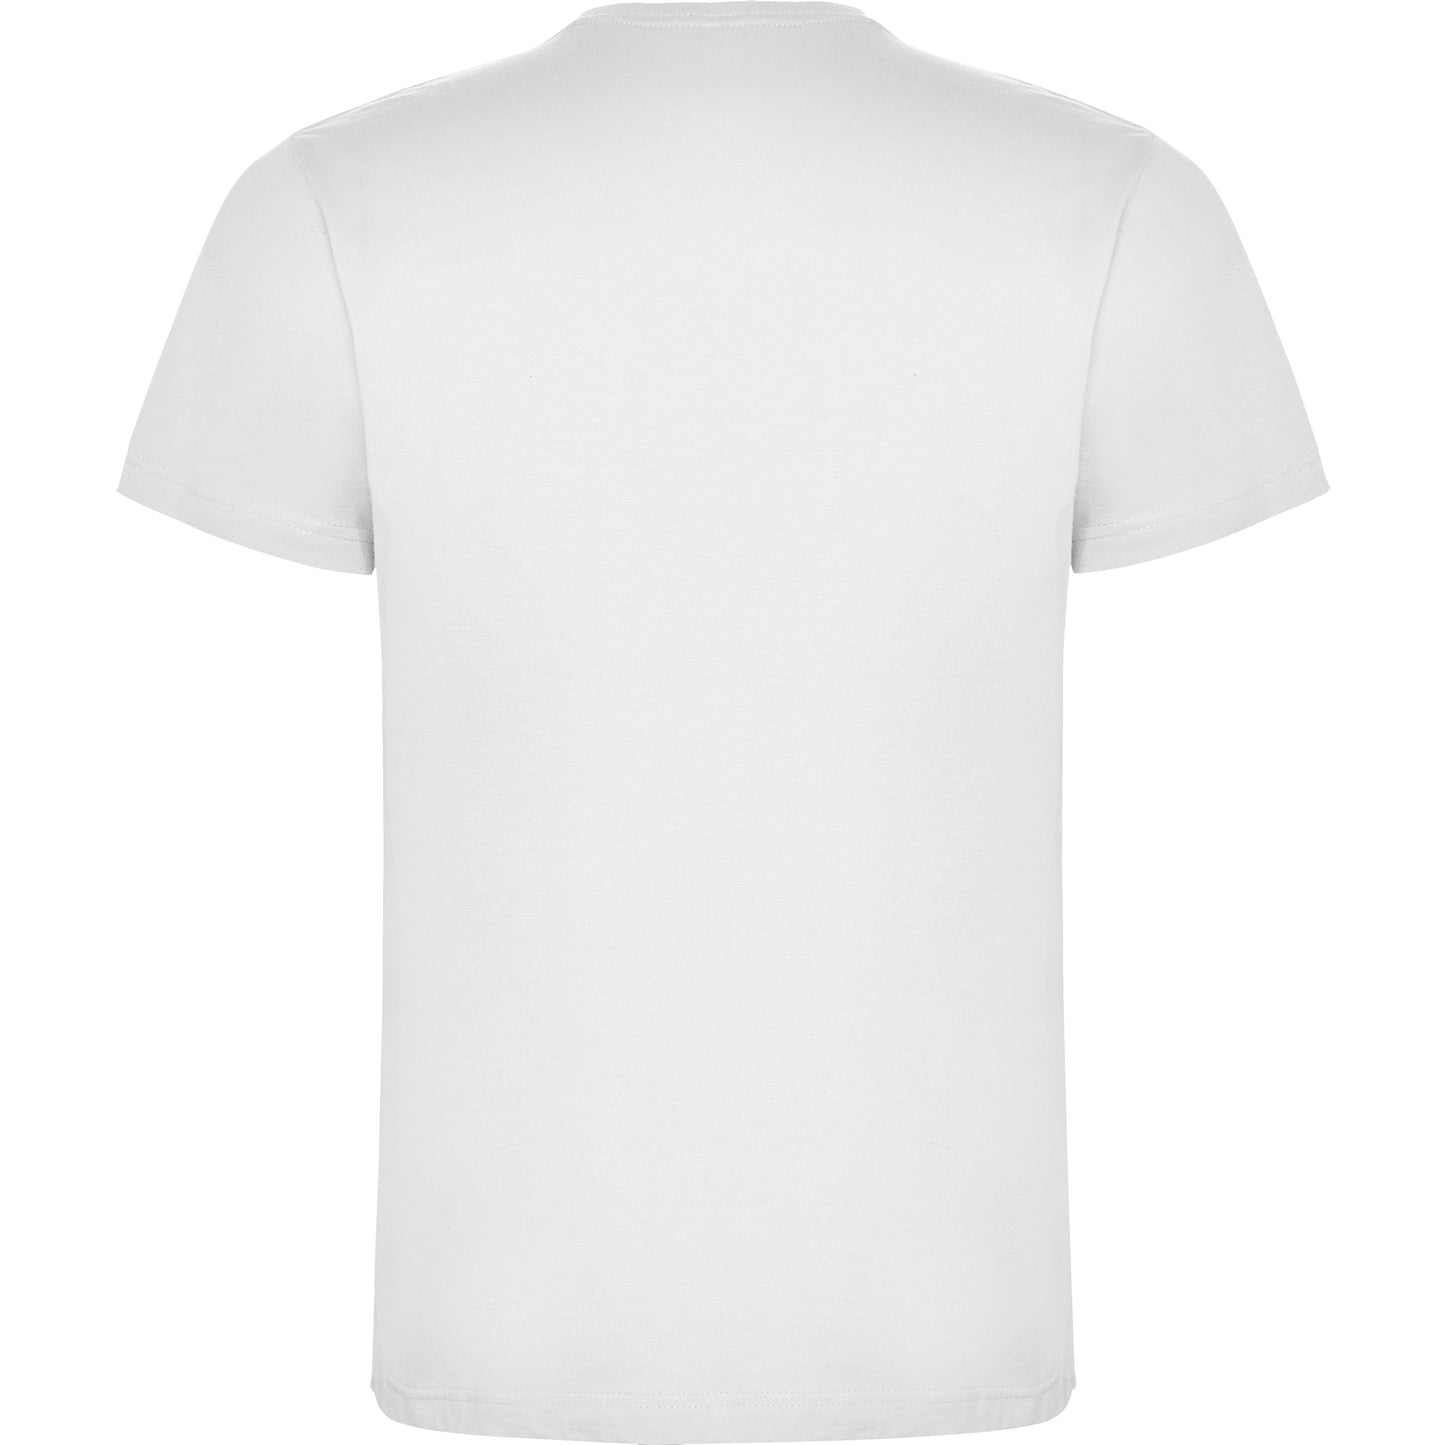 Dogo Premium T-shirt Hvit